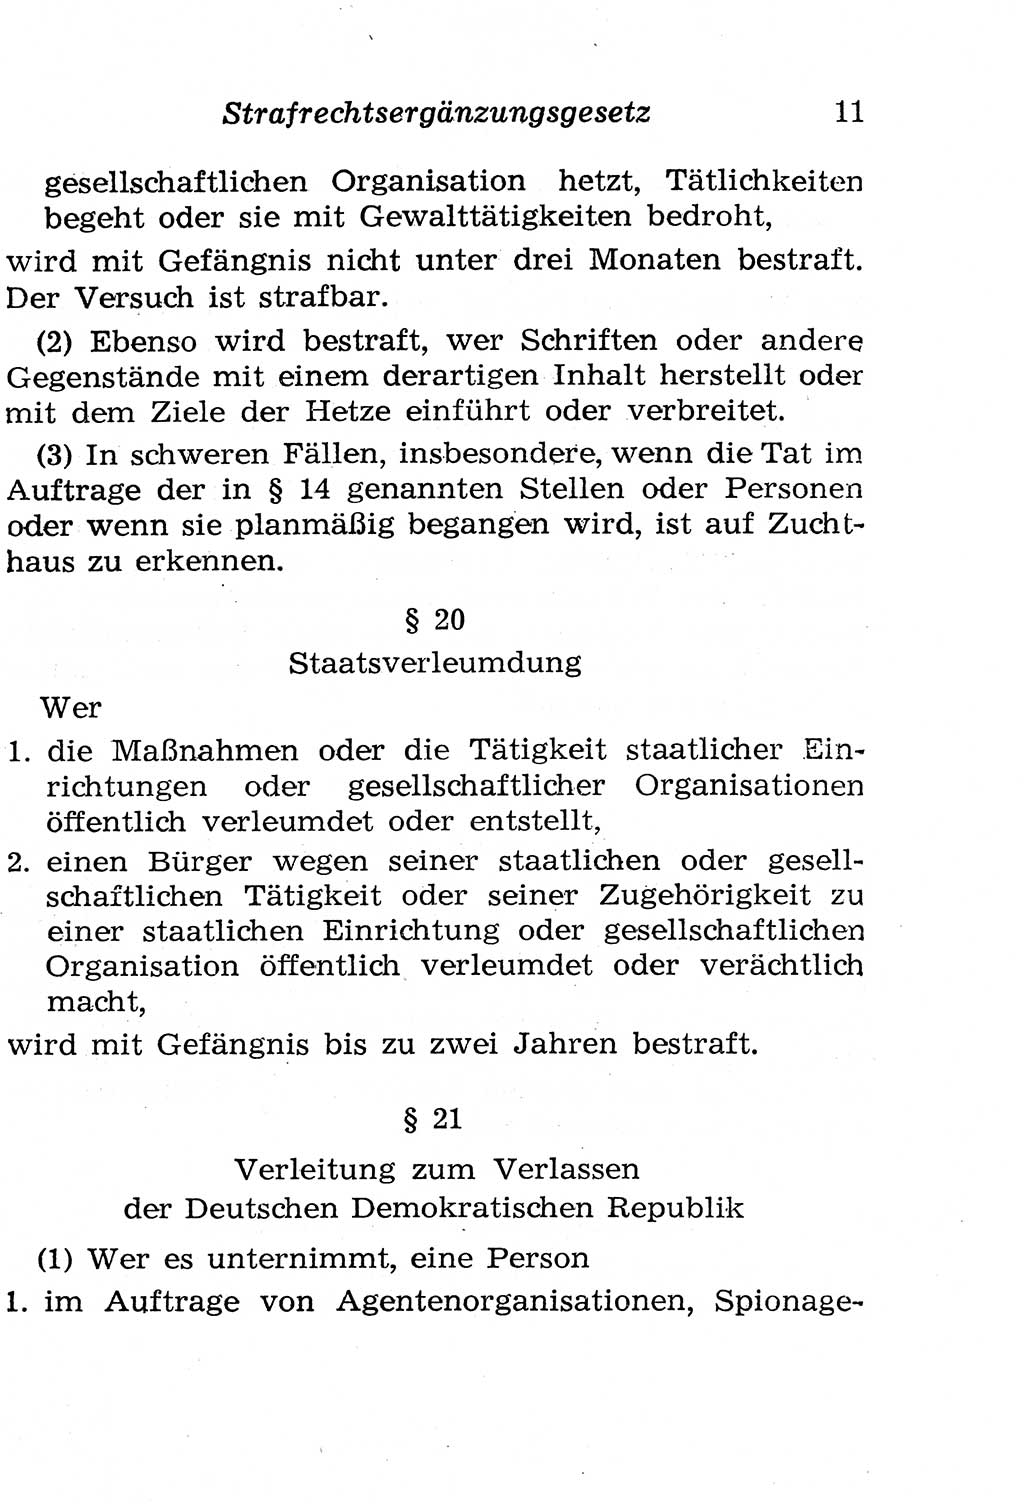 Strafgesetzbuch (StGB) und andere Strafgesetze [Deutsche Demokratische Republik (DDR)] 1958, Seite 11 (StGB Strafges. DDR 1958, S. 11)